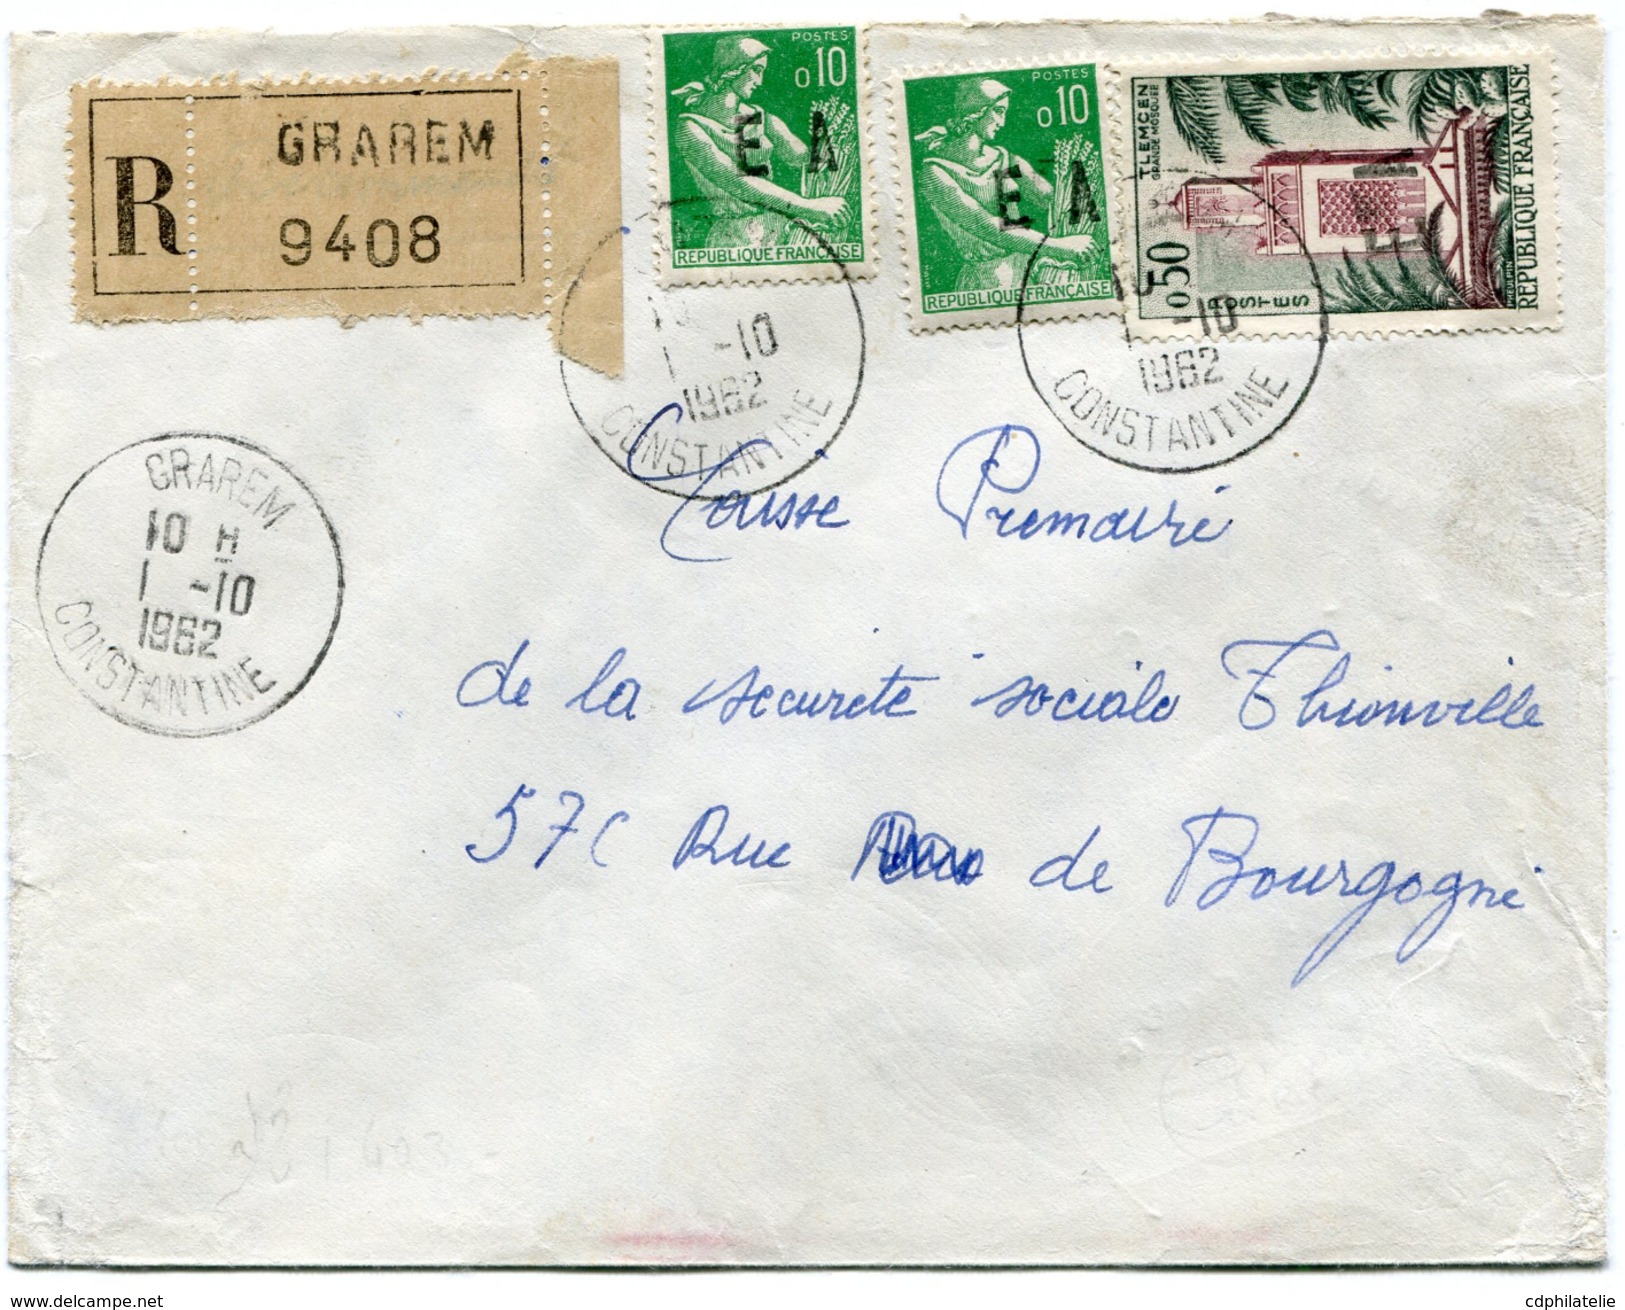 ALGERIE LETTRE RECOMMANDEE DEPART GRAREM 1-10-1962 CONSTANTINE POUR LA FRANCE - Covers & Documents